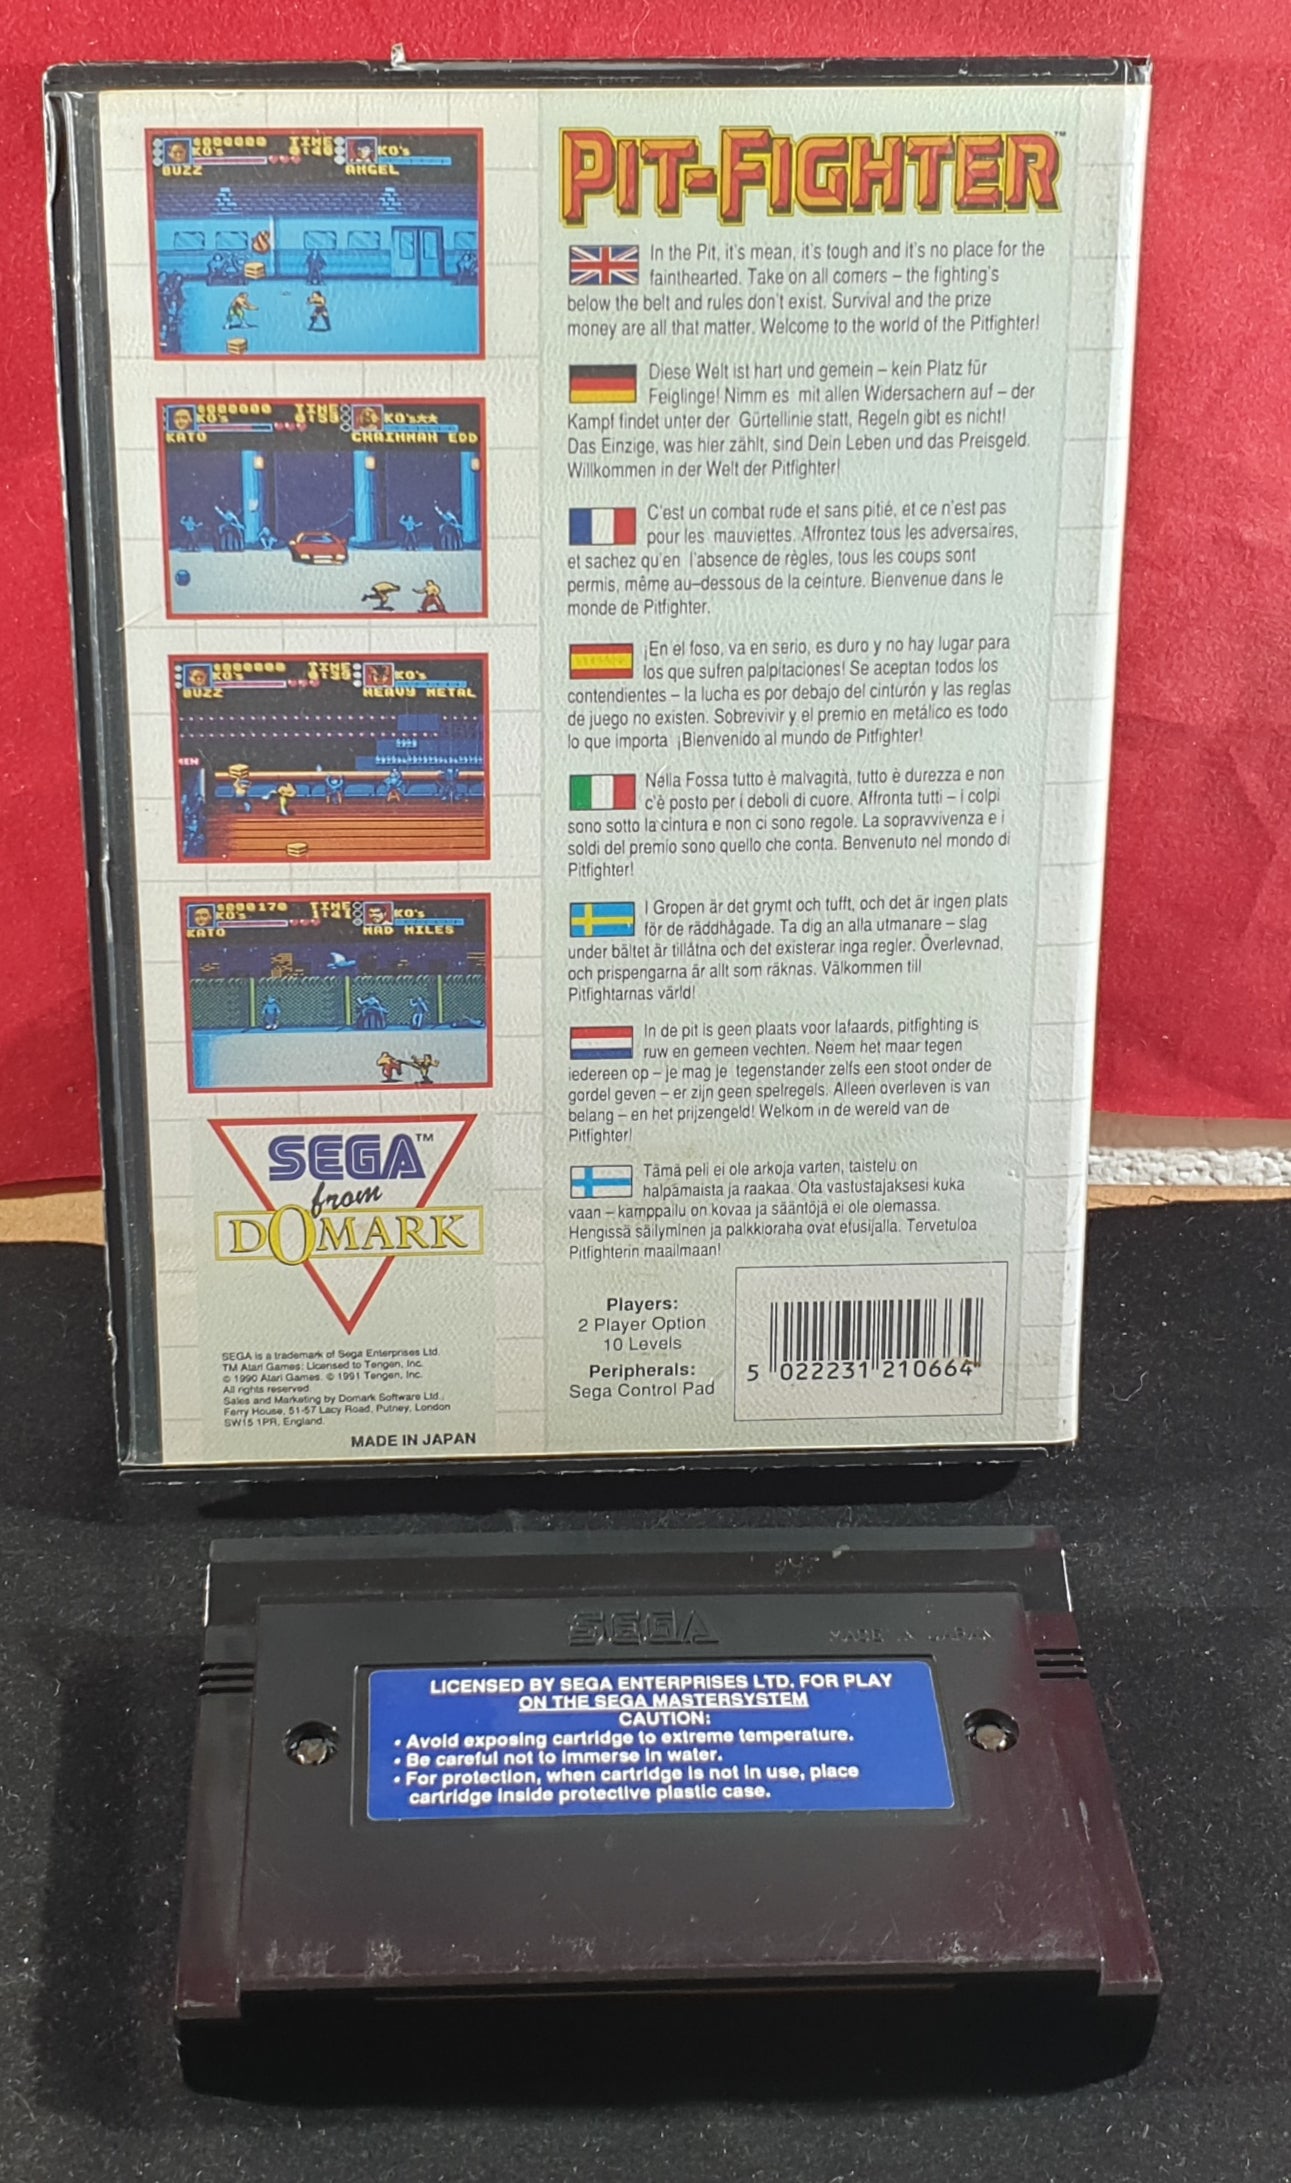 Pit-Fighter Sega Master System Game